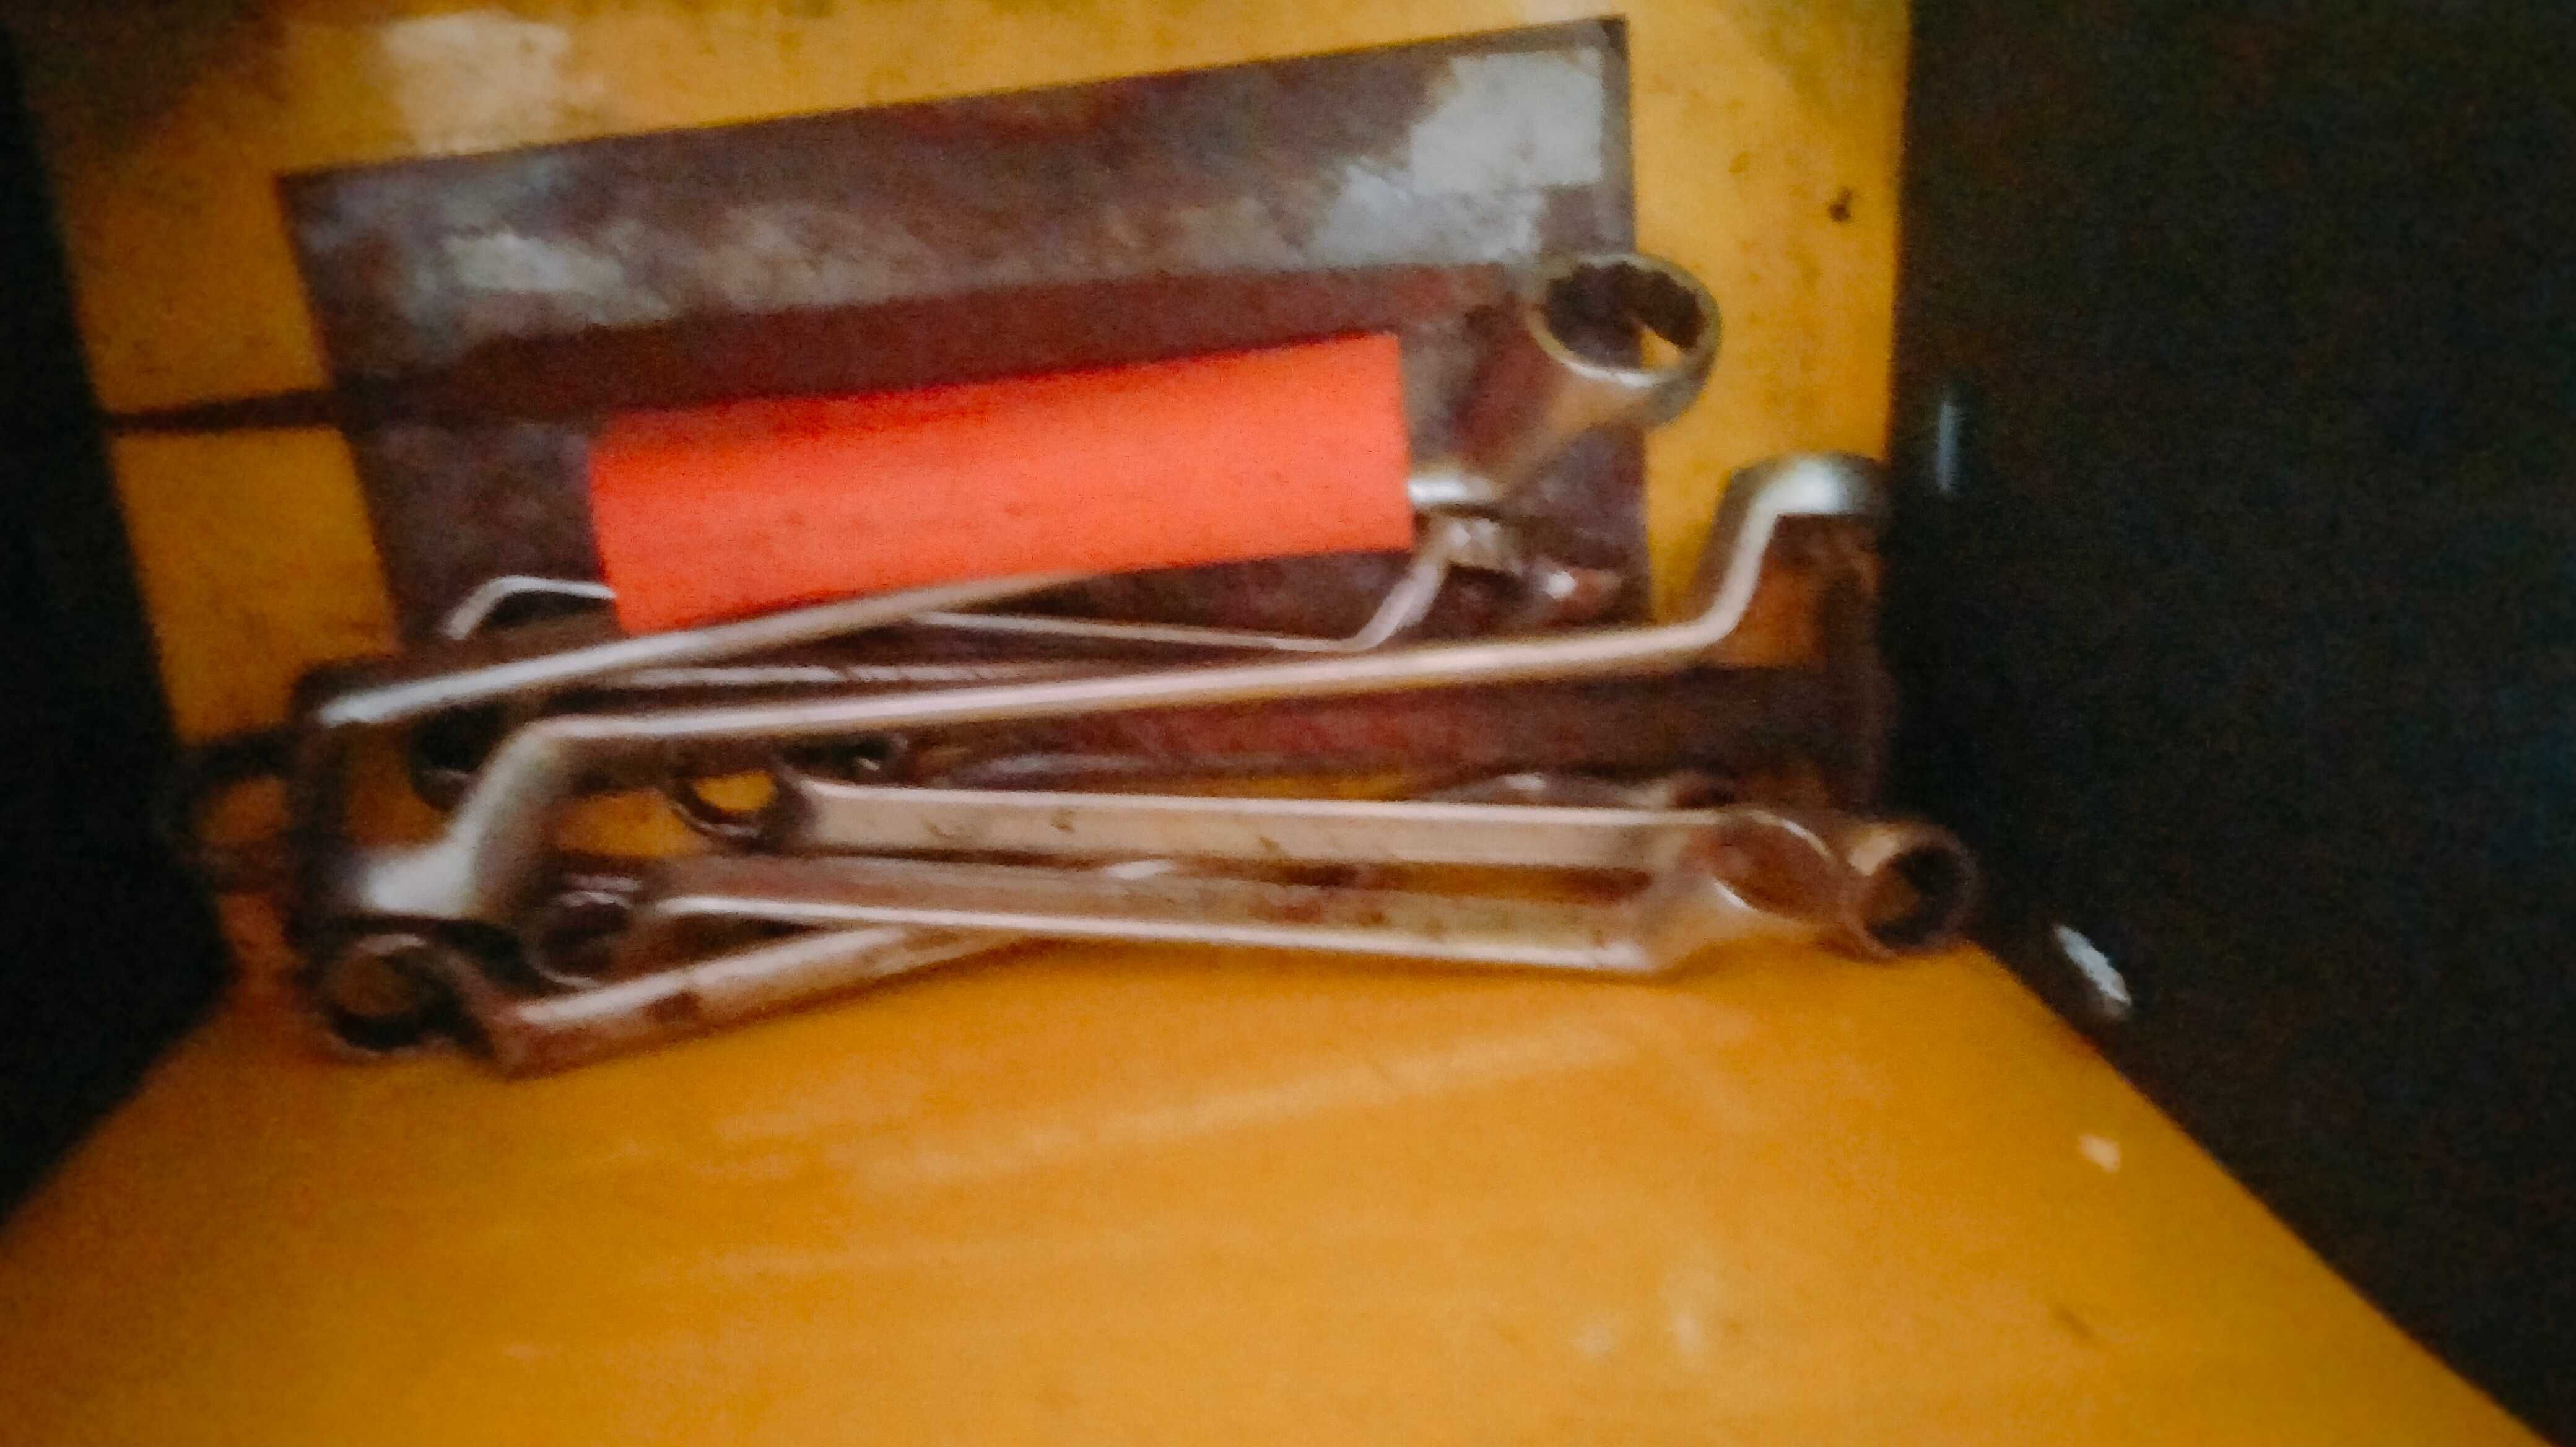 Caixa de ferramentas mecânico